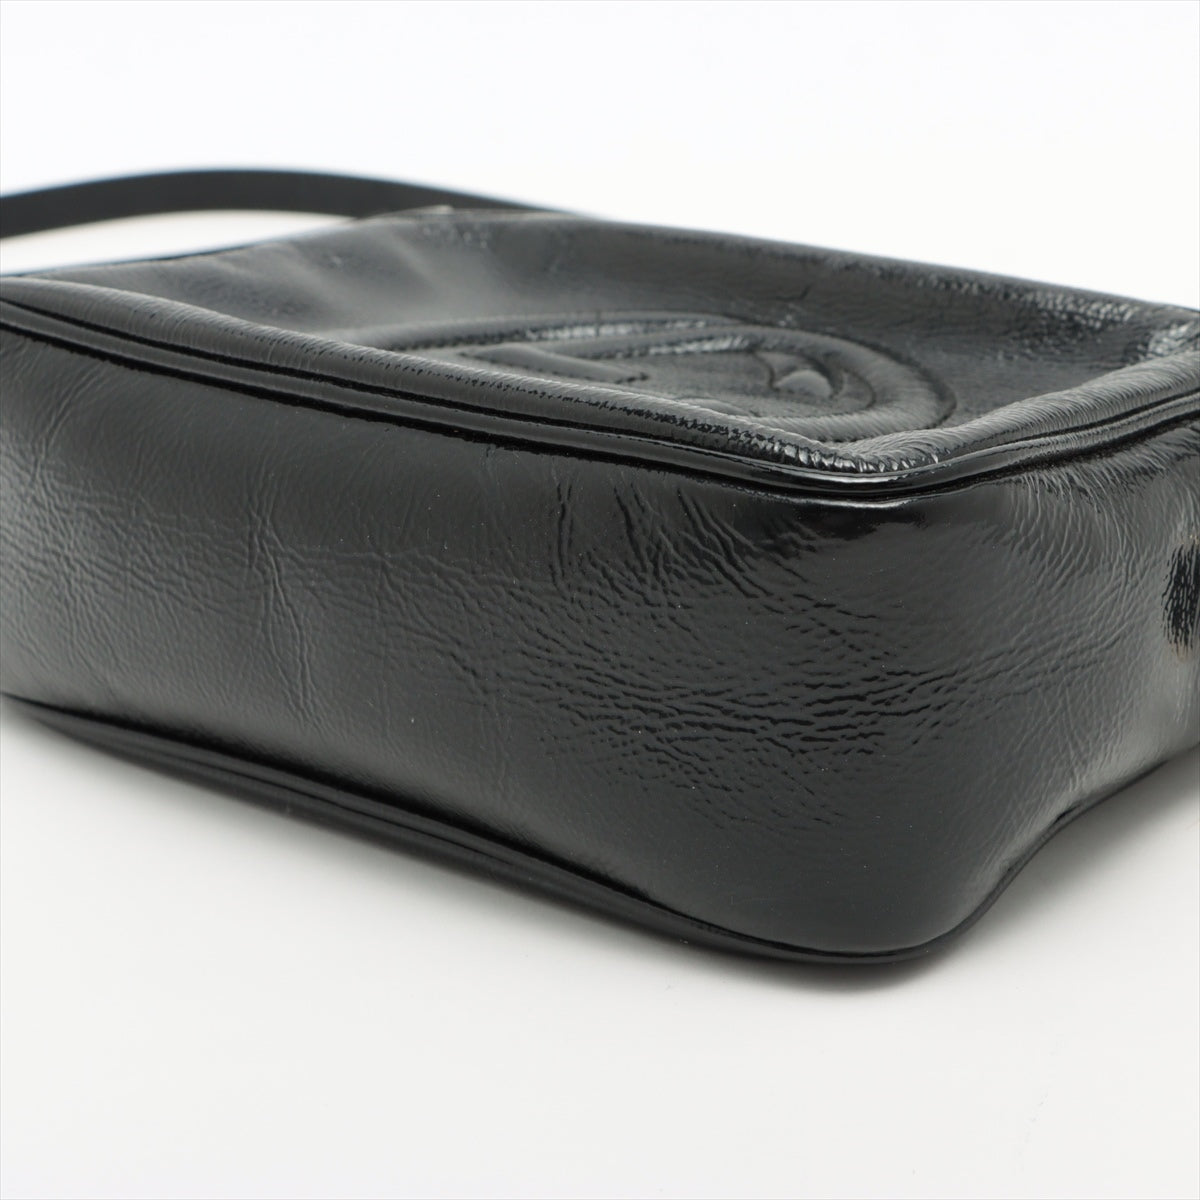 Gucci Soho Patent leather Shoulder bag Black 308364